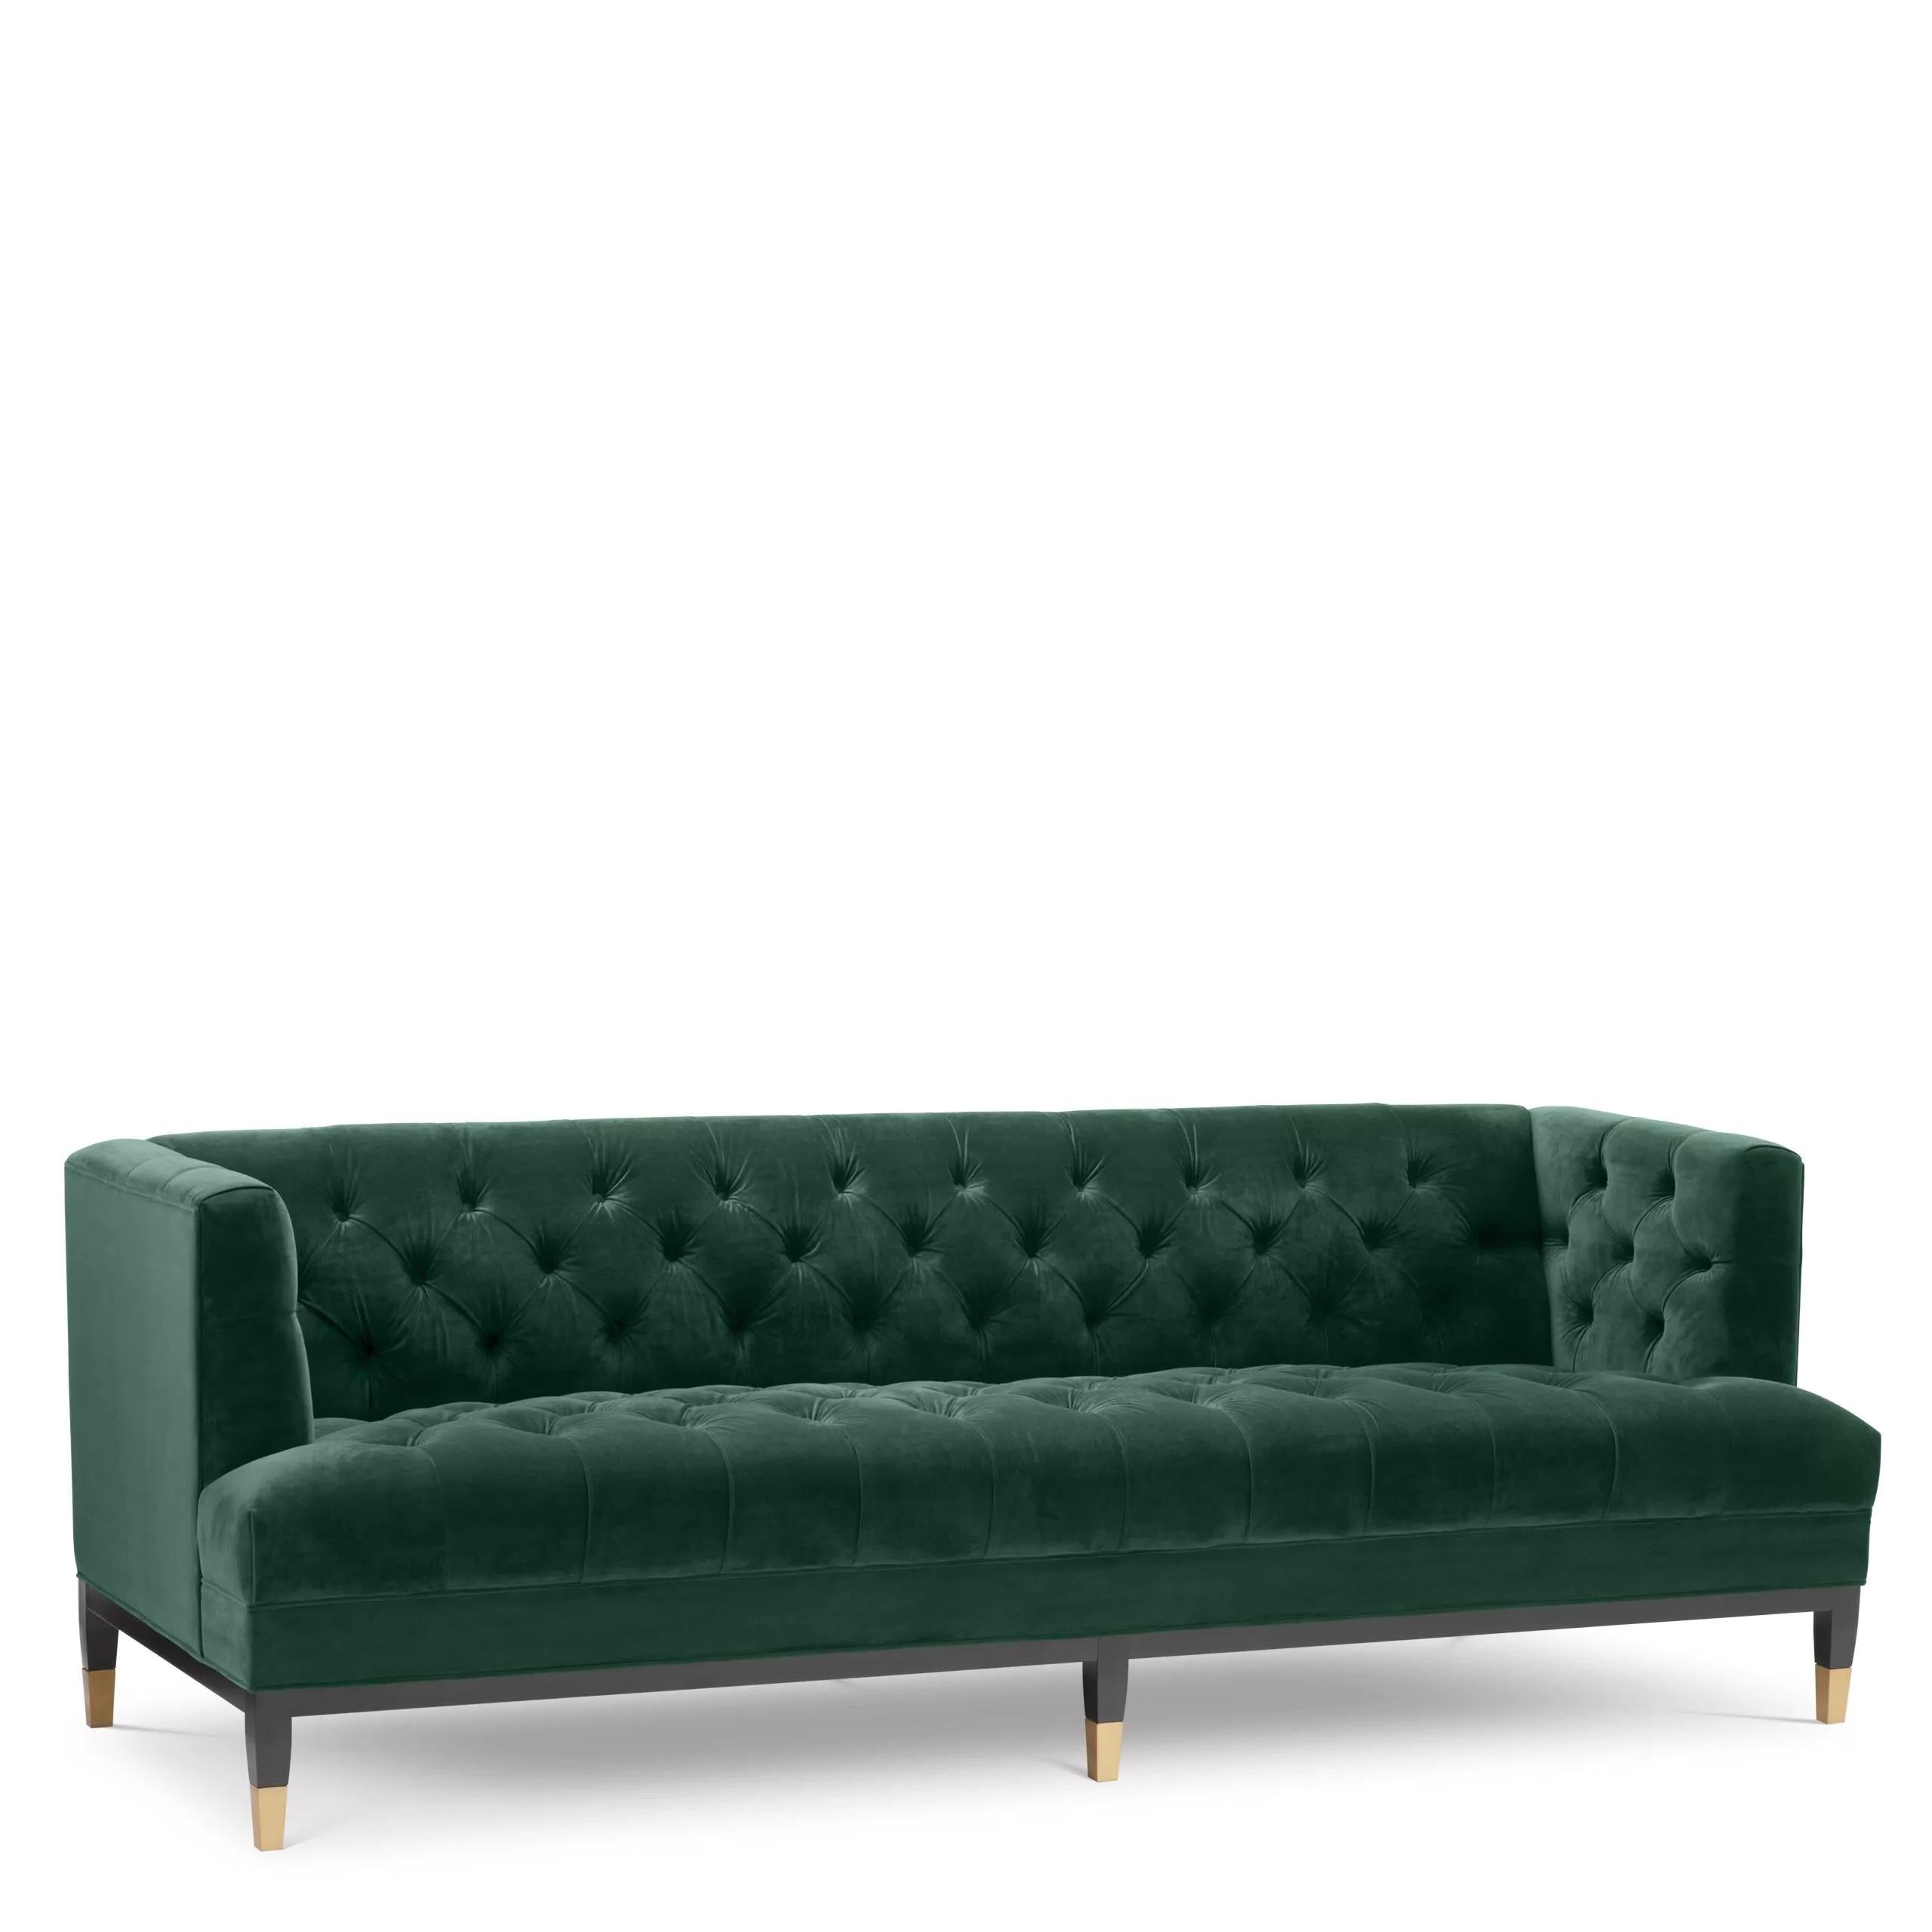 Schwarz lackierte Holzfüße und tiefgrüner Samt für ein bequemes Chesterfield-Sofa